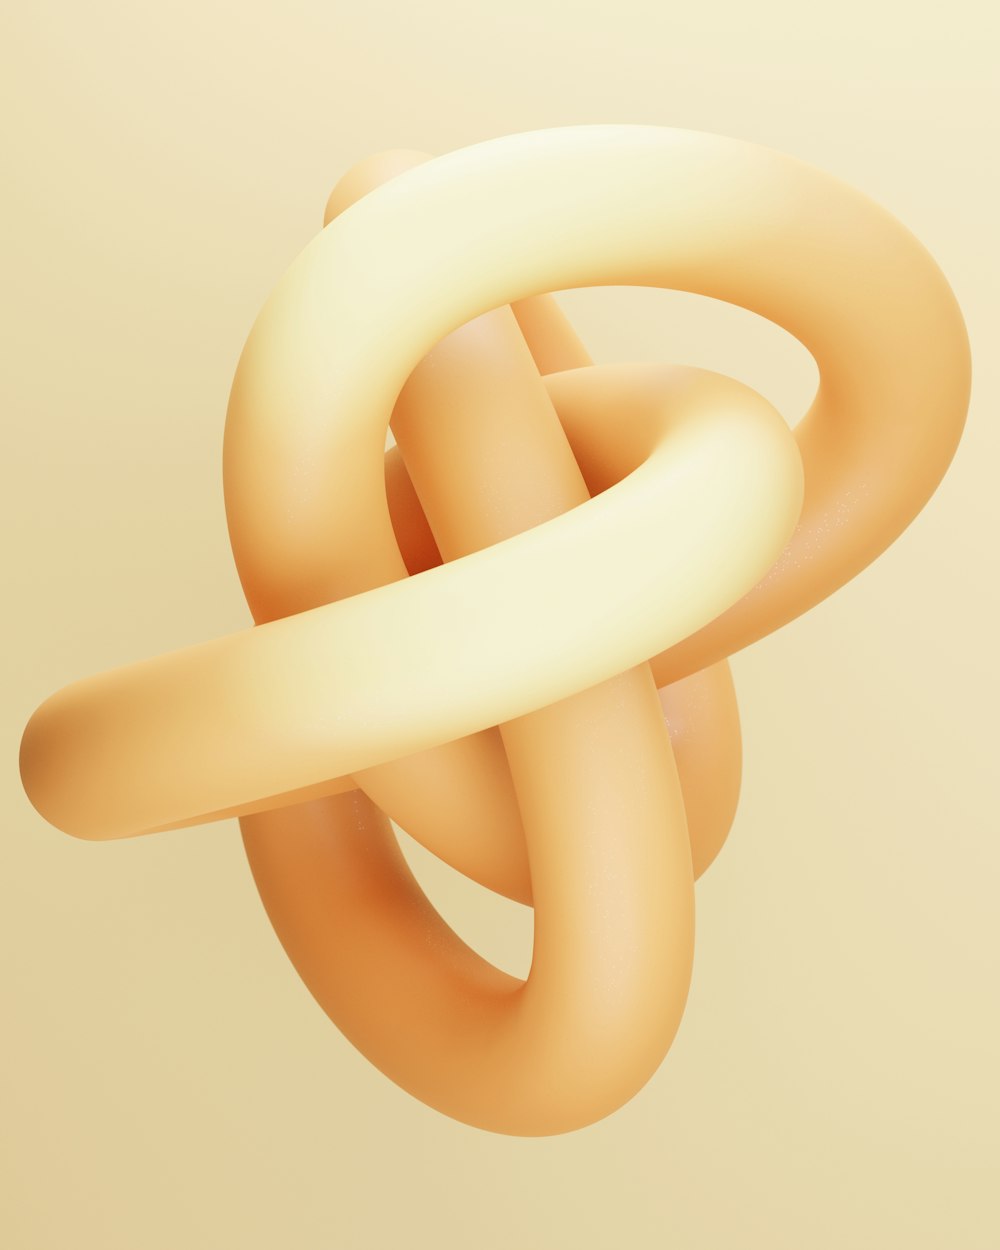 une image abstraite d’un nœud en forme de cercle